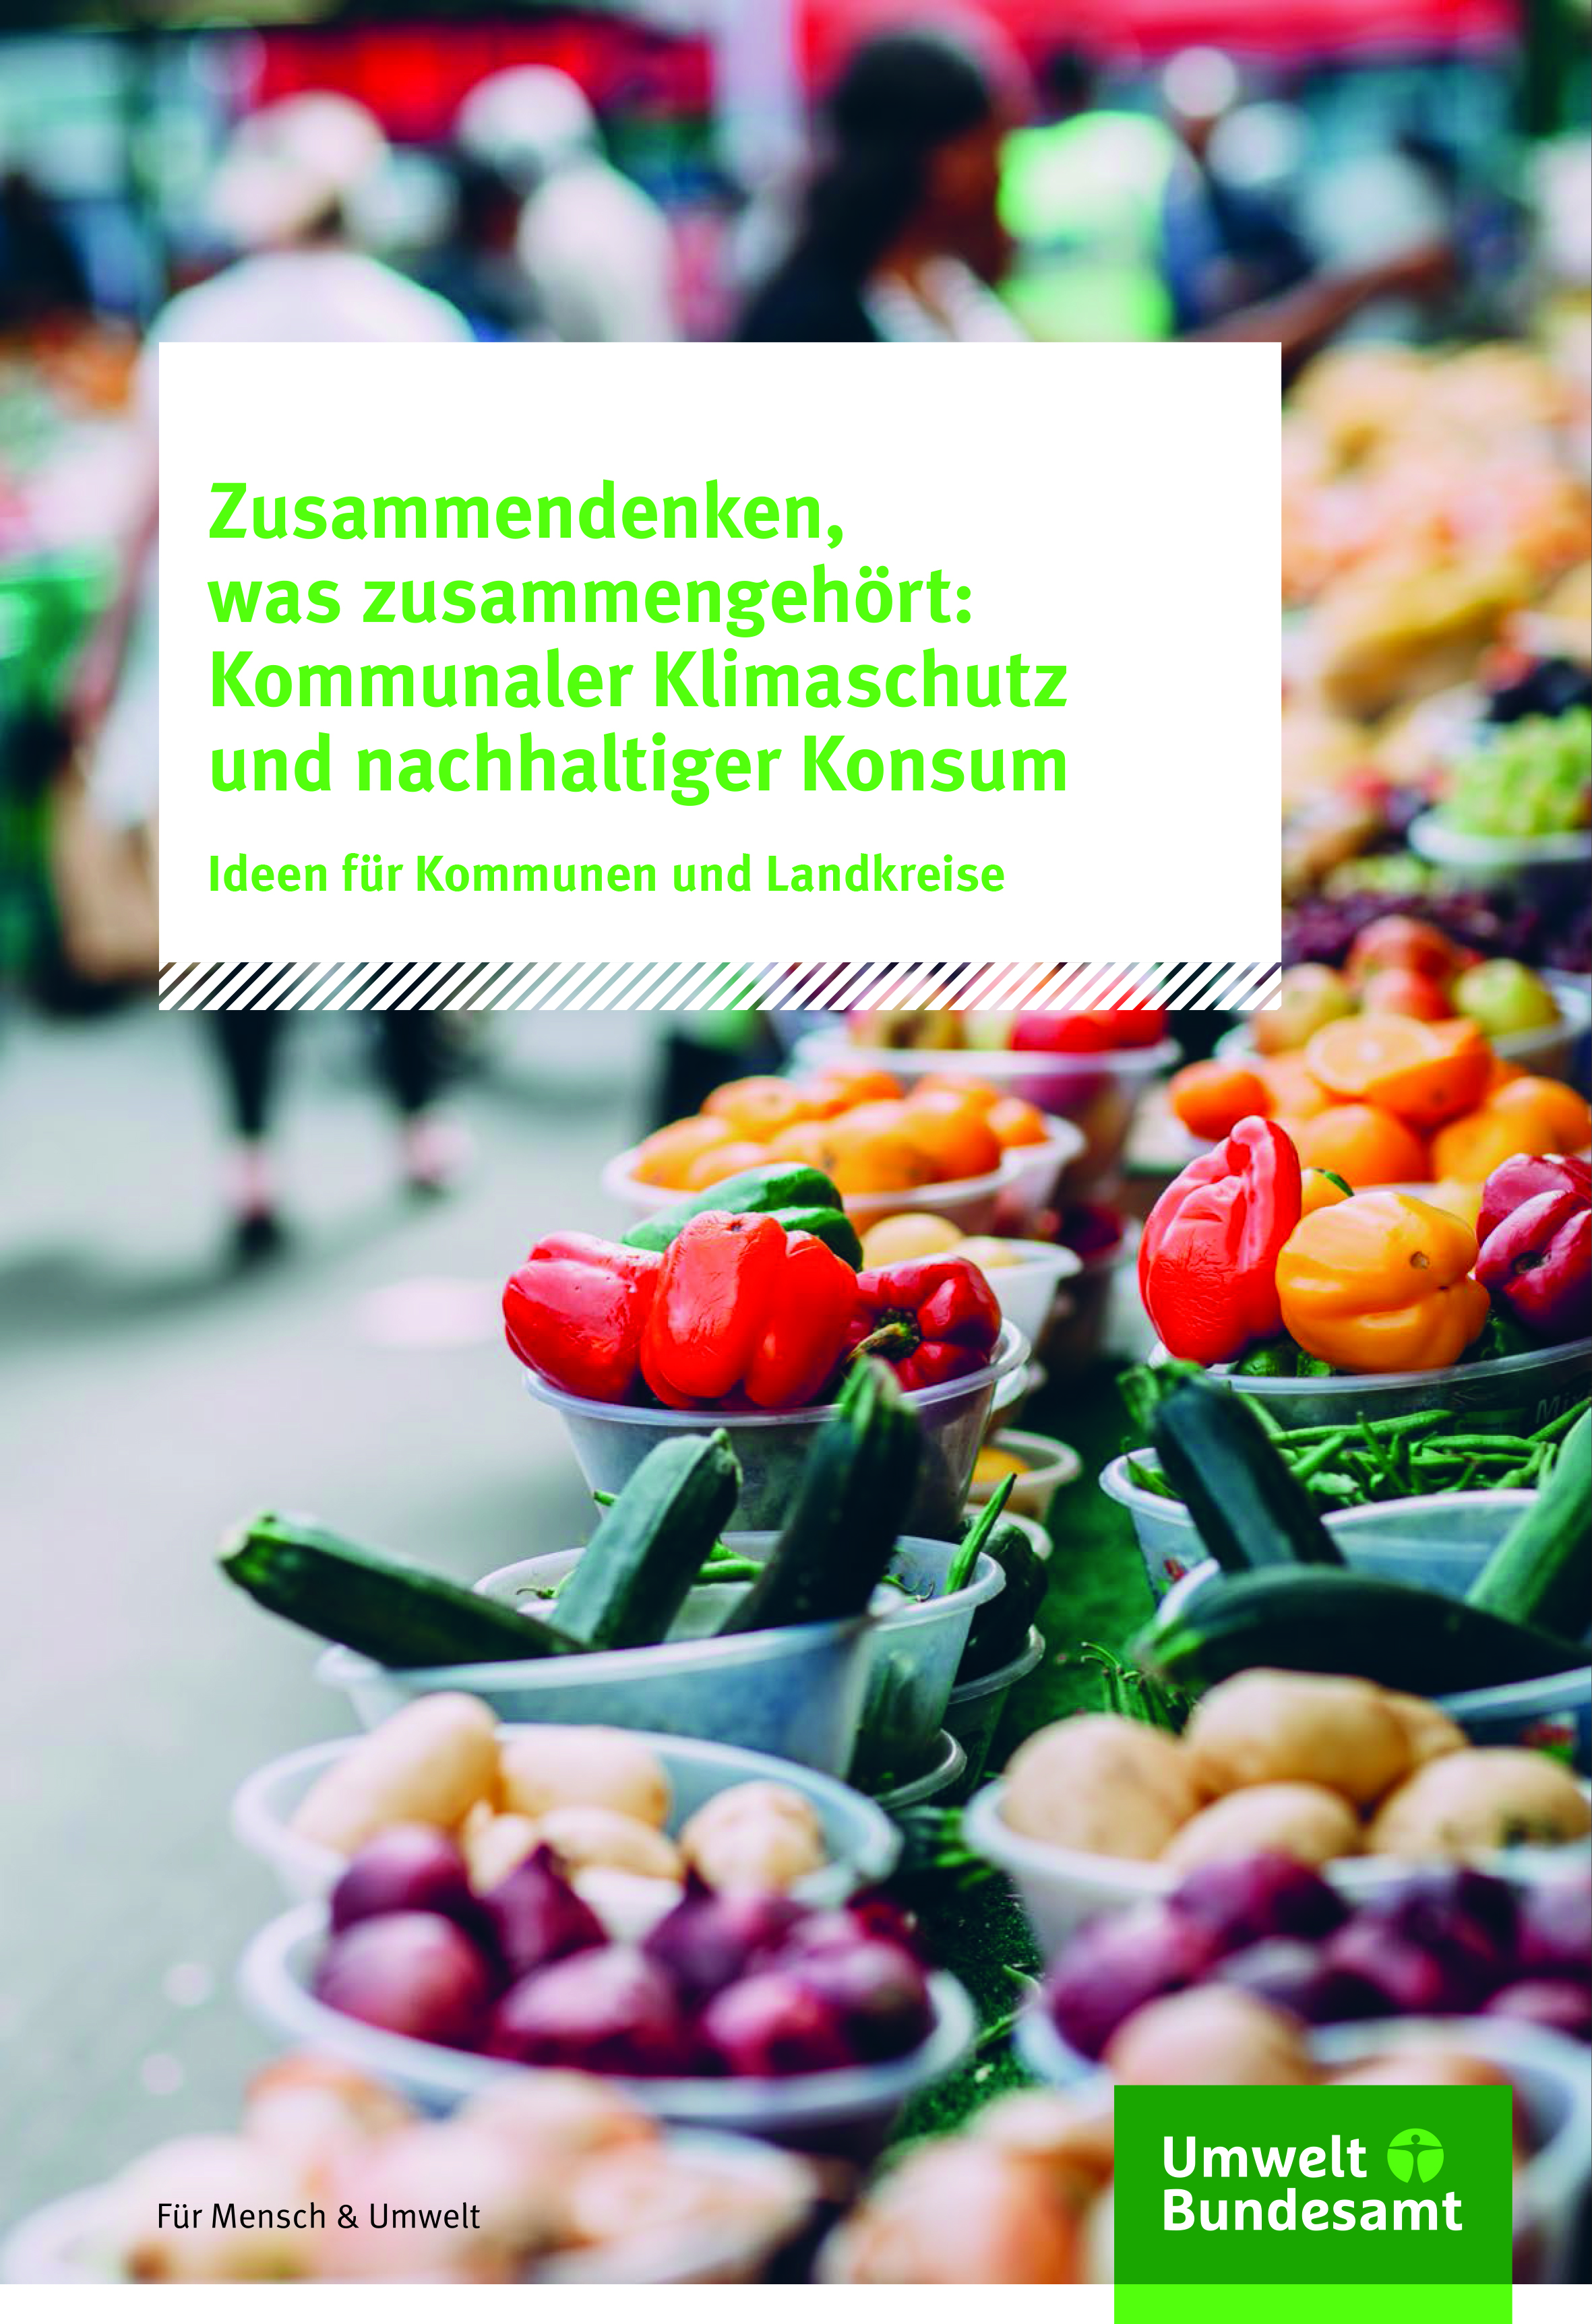 Ria Müller et al. 2020: Zusammendenken, was zusammengehört: Kommunaler Klimaschutz und nachhaltiger Konsum, Ideen für Kommunen und Landkreise | Umweltbundesamt